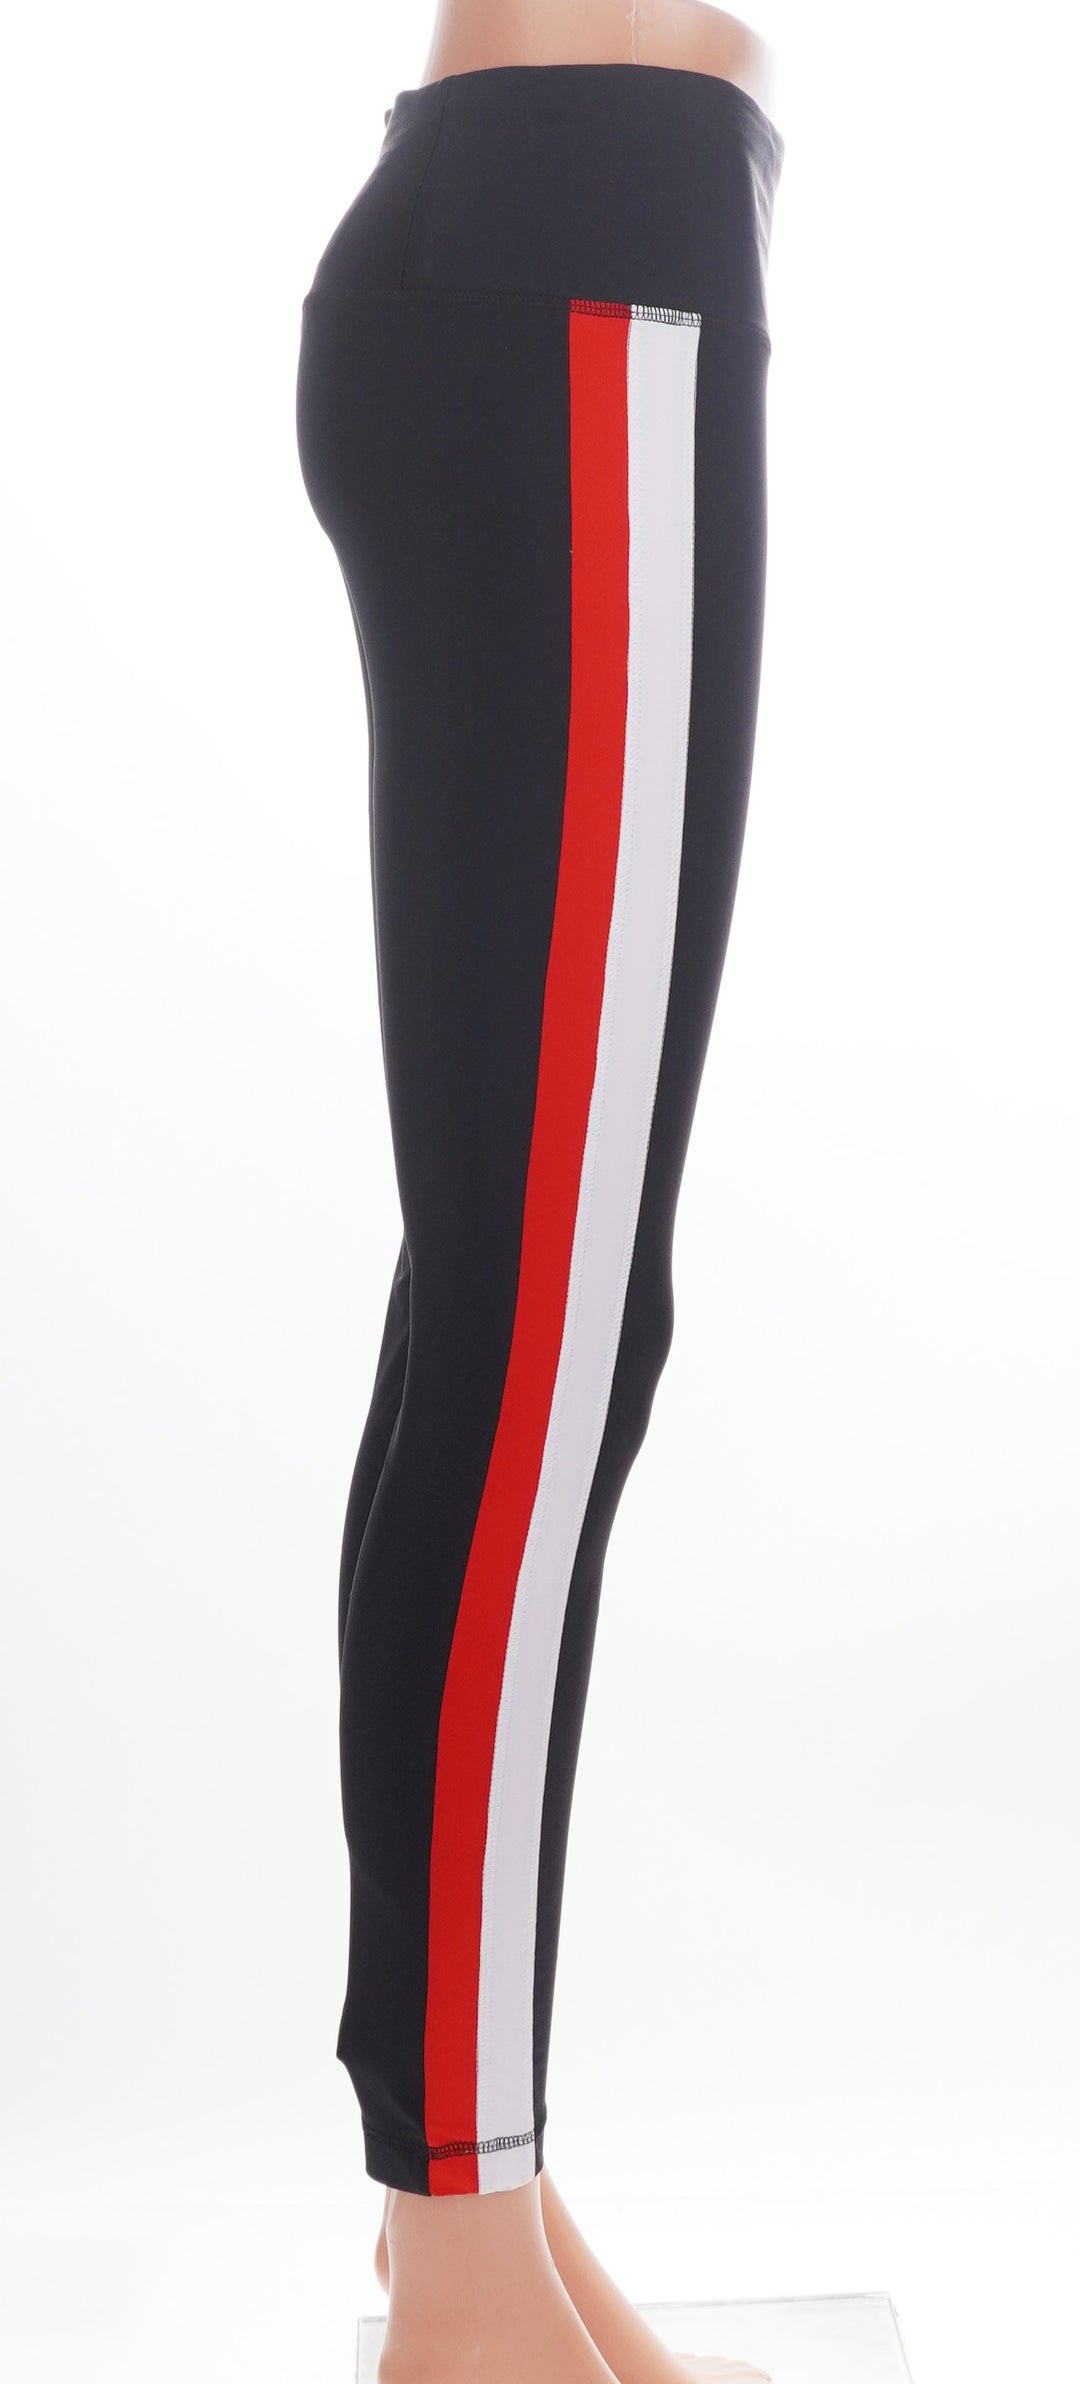 Kinona Apres 18 Striped Legging - Black/Red- Size Small - Skorzie